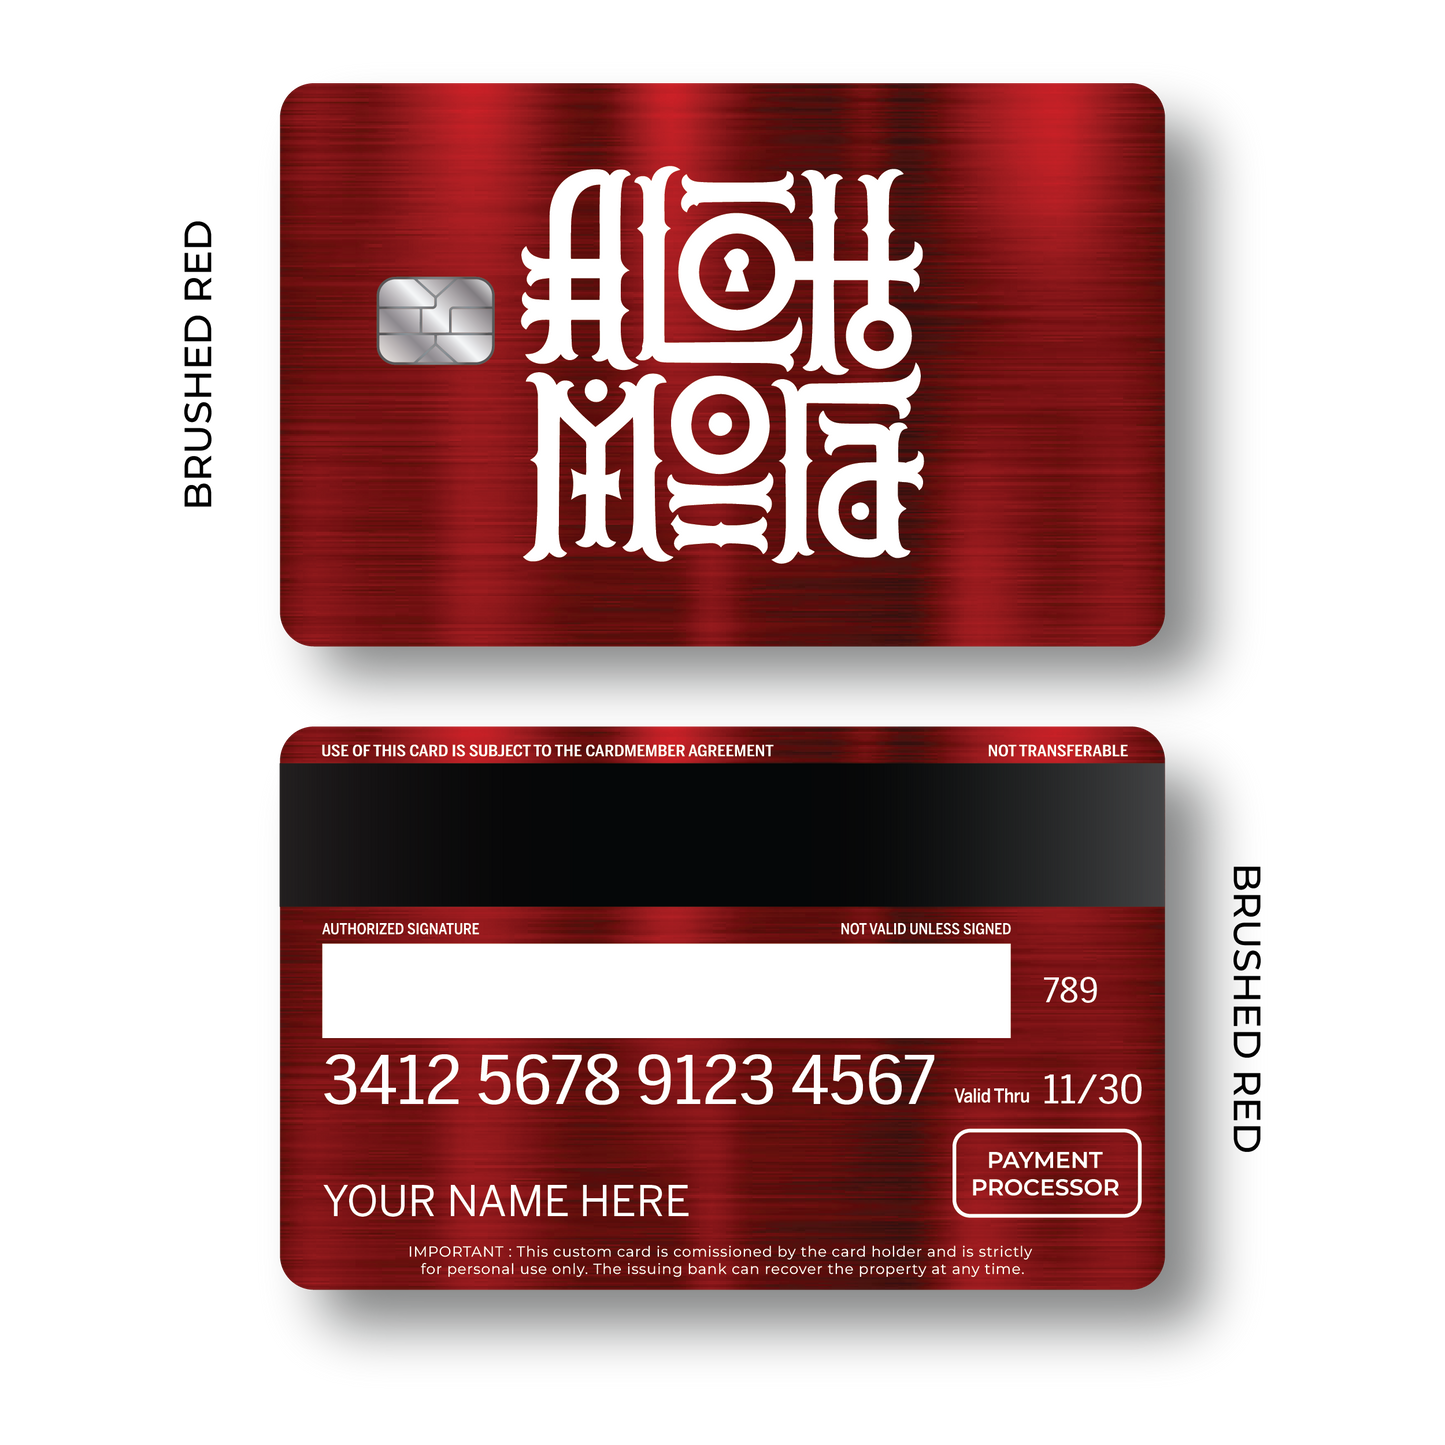 Metal Card Alohomora